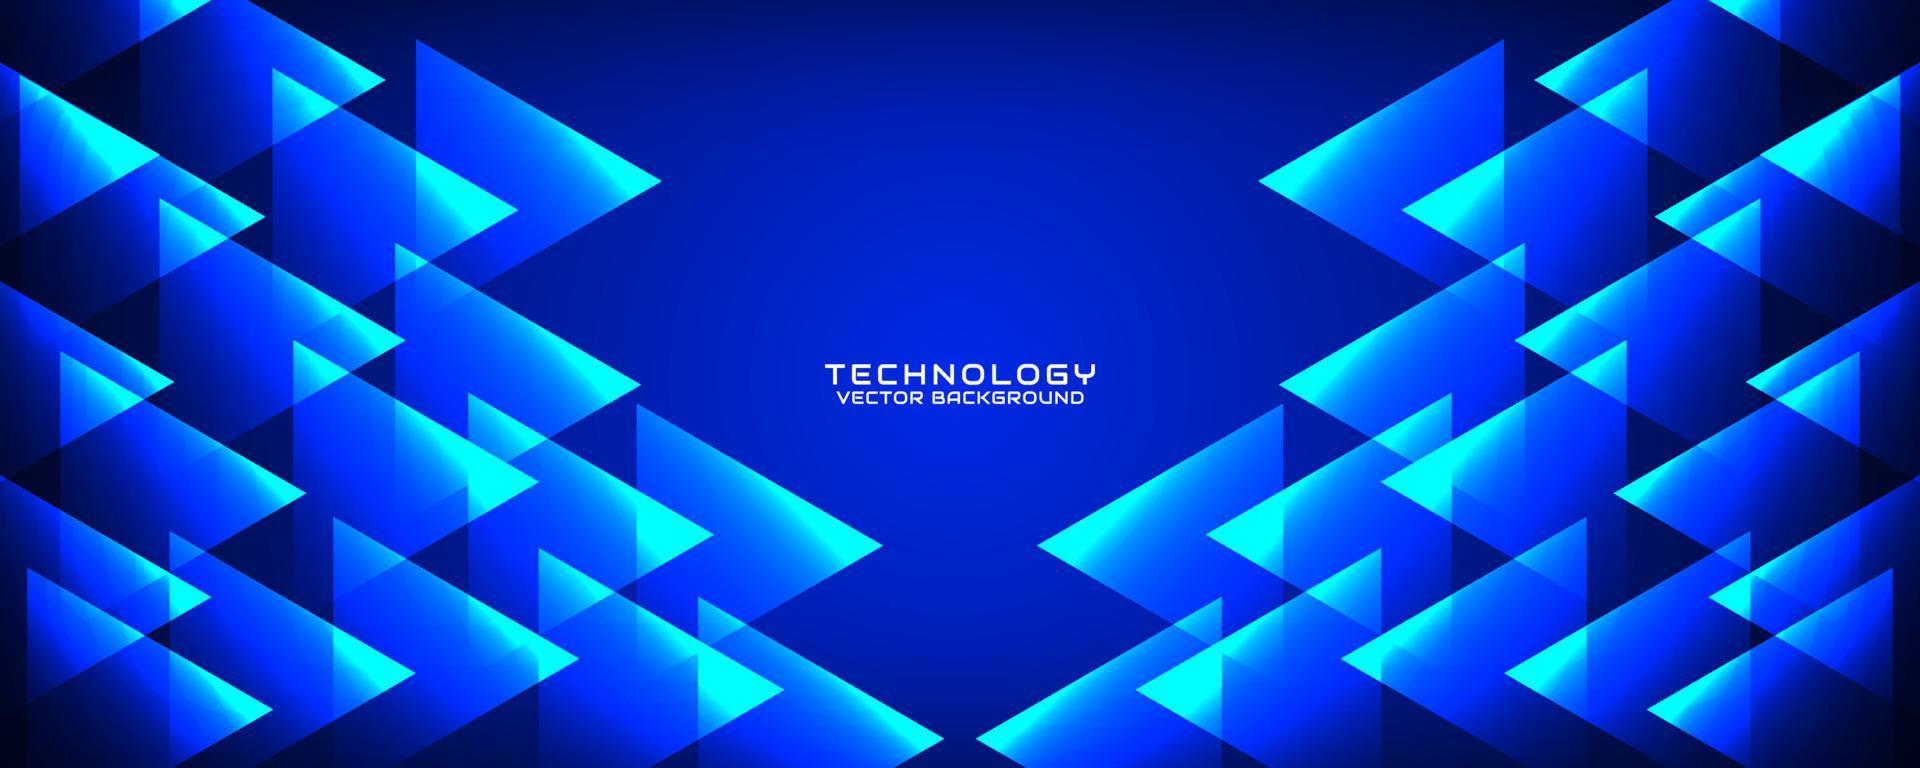 Capa de superposición de fondo abstracto de tecnología azul 3d en el espacio oscuro con decoración de efecto triangular. concepto de estilo de recorte de elemento de diseño gráfico para banner, volante, tarjeta, portada de folleto o página de inicio vector